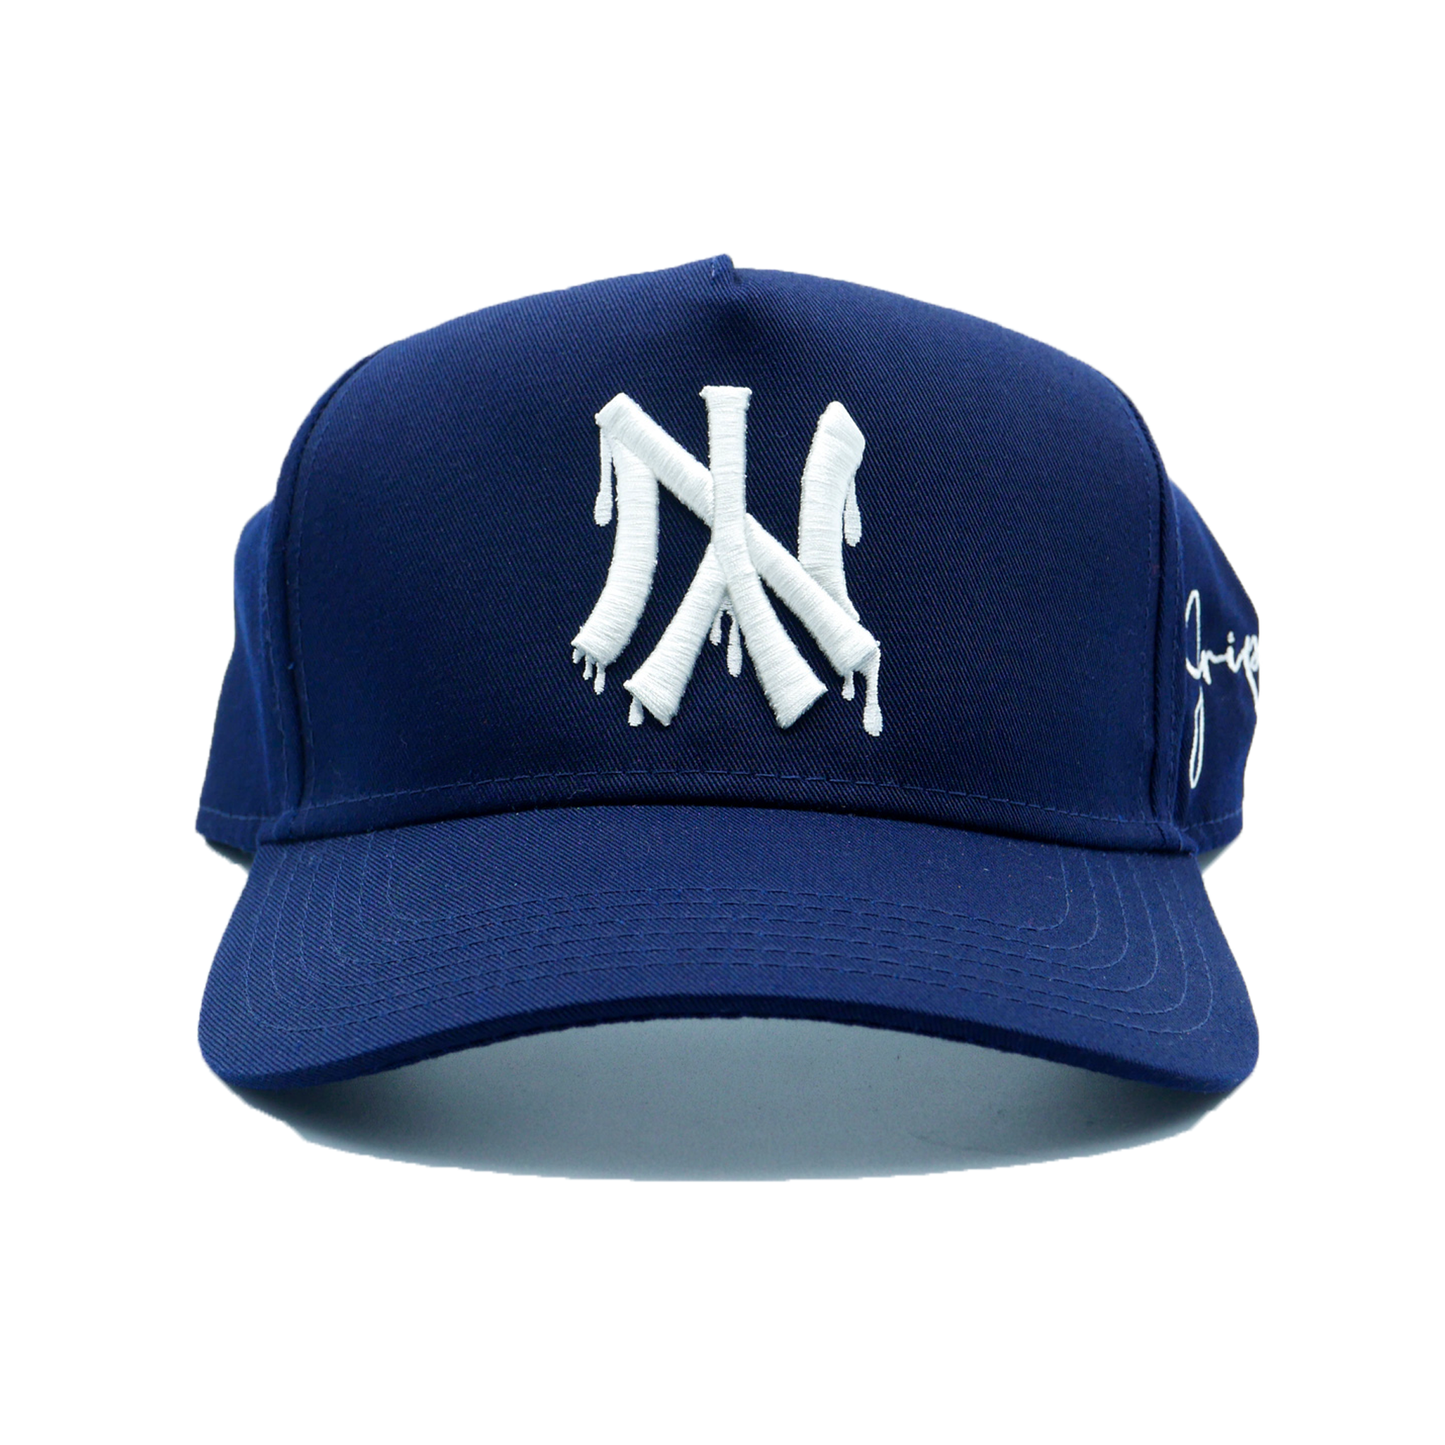 NY Dripping Snapback Hat (NAVY)